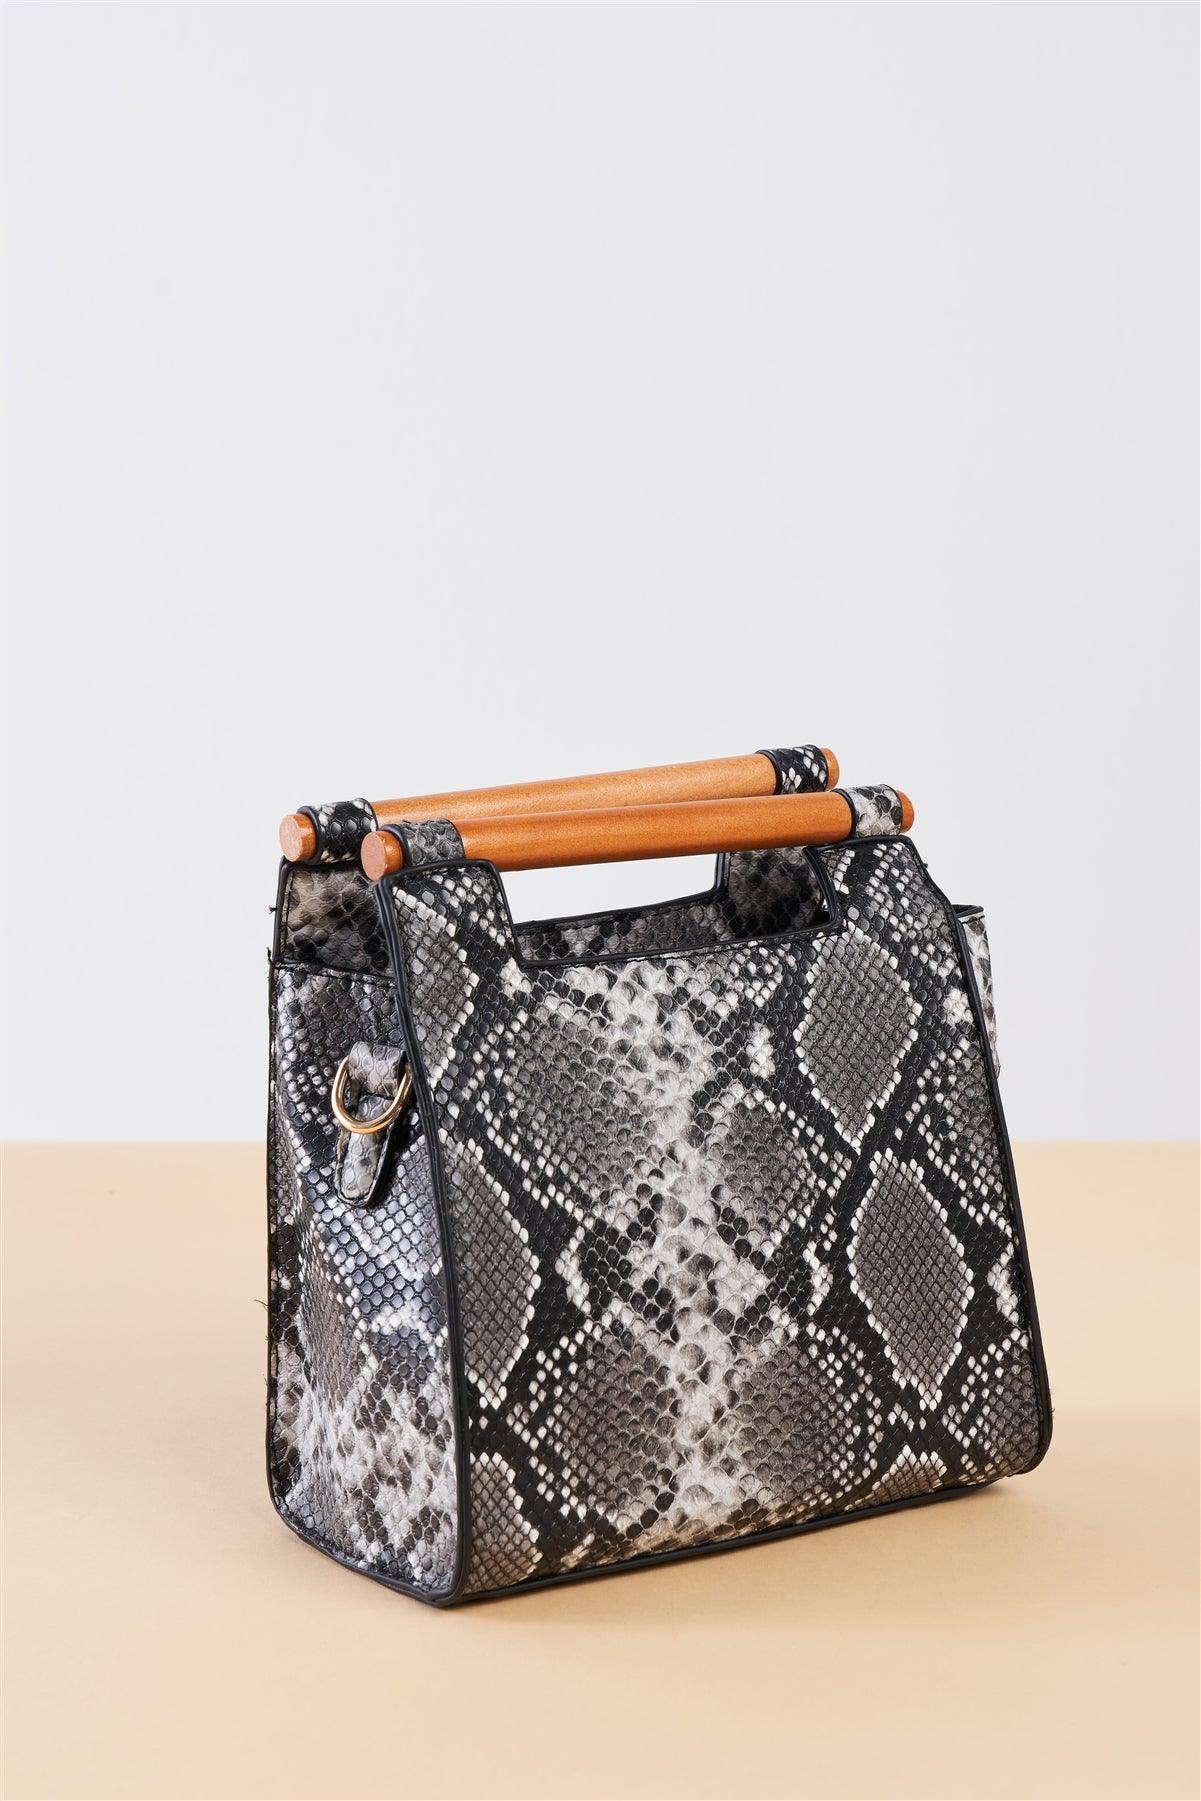 Black And White Vegan Python Snake Print Mini Handbag With Bamboo Trim /1 Bag